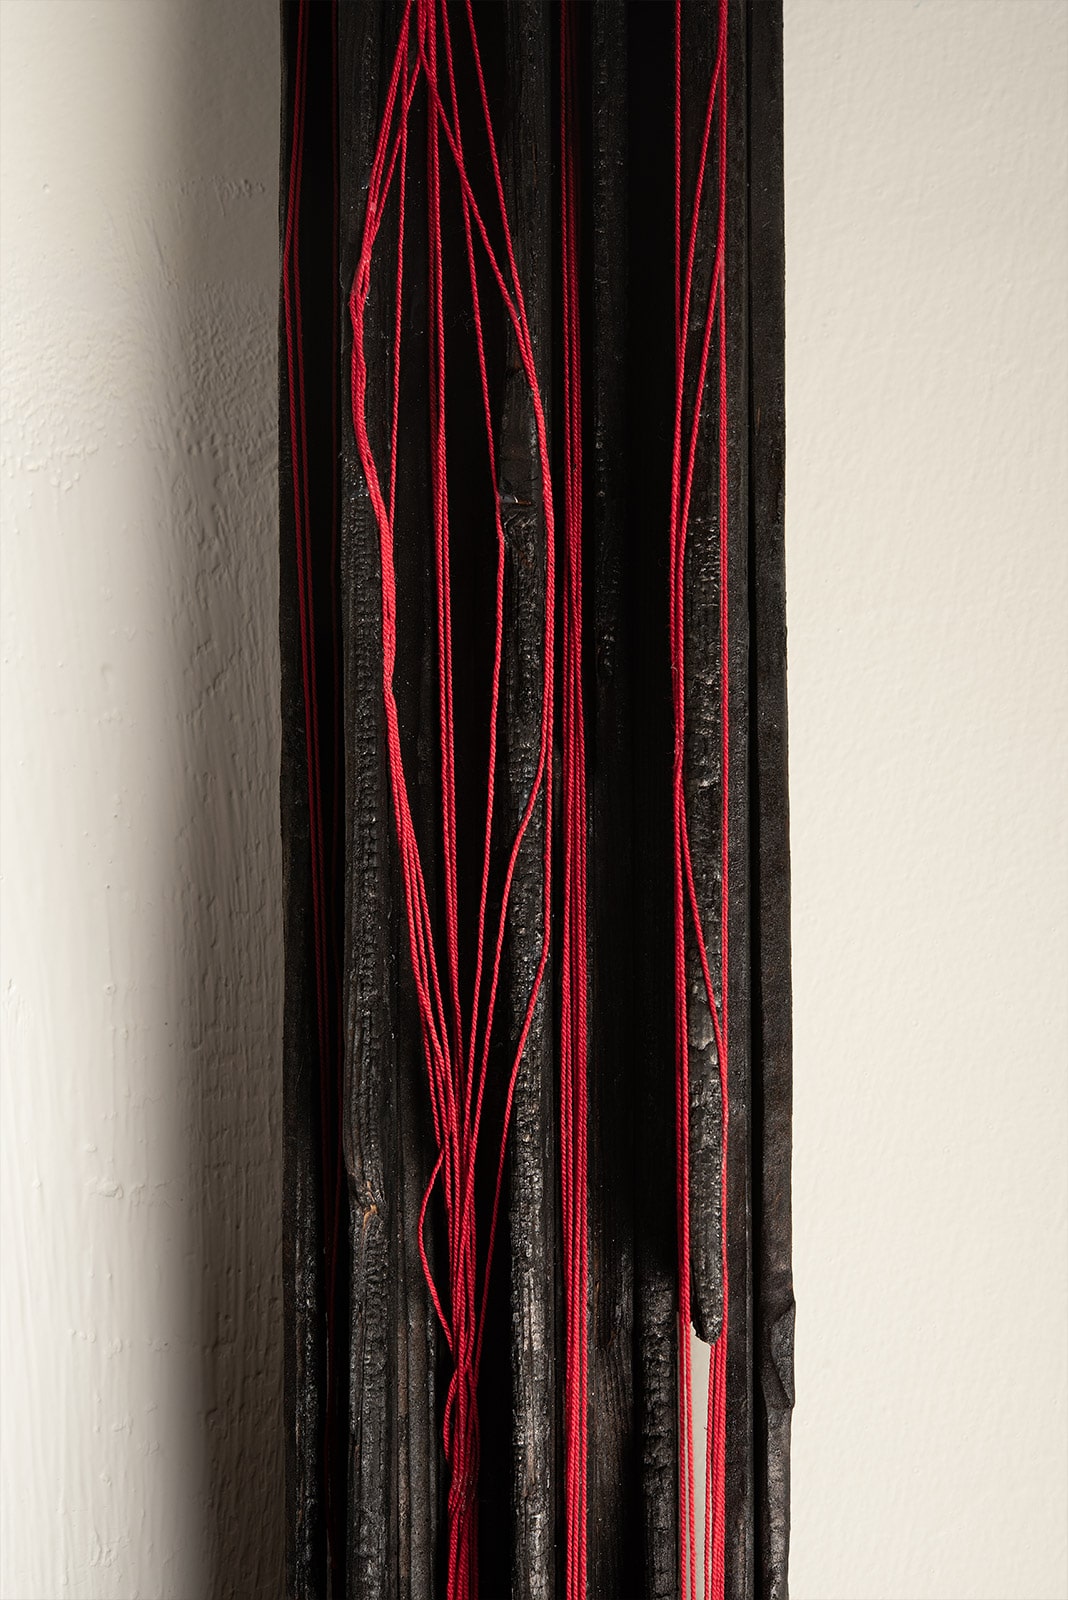 scultura di legno carbonizzato e fili di cotone rosso